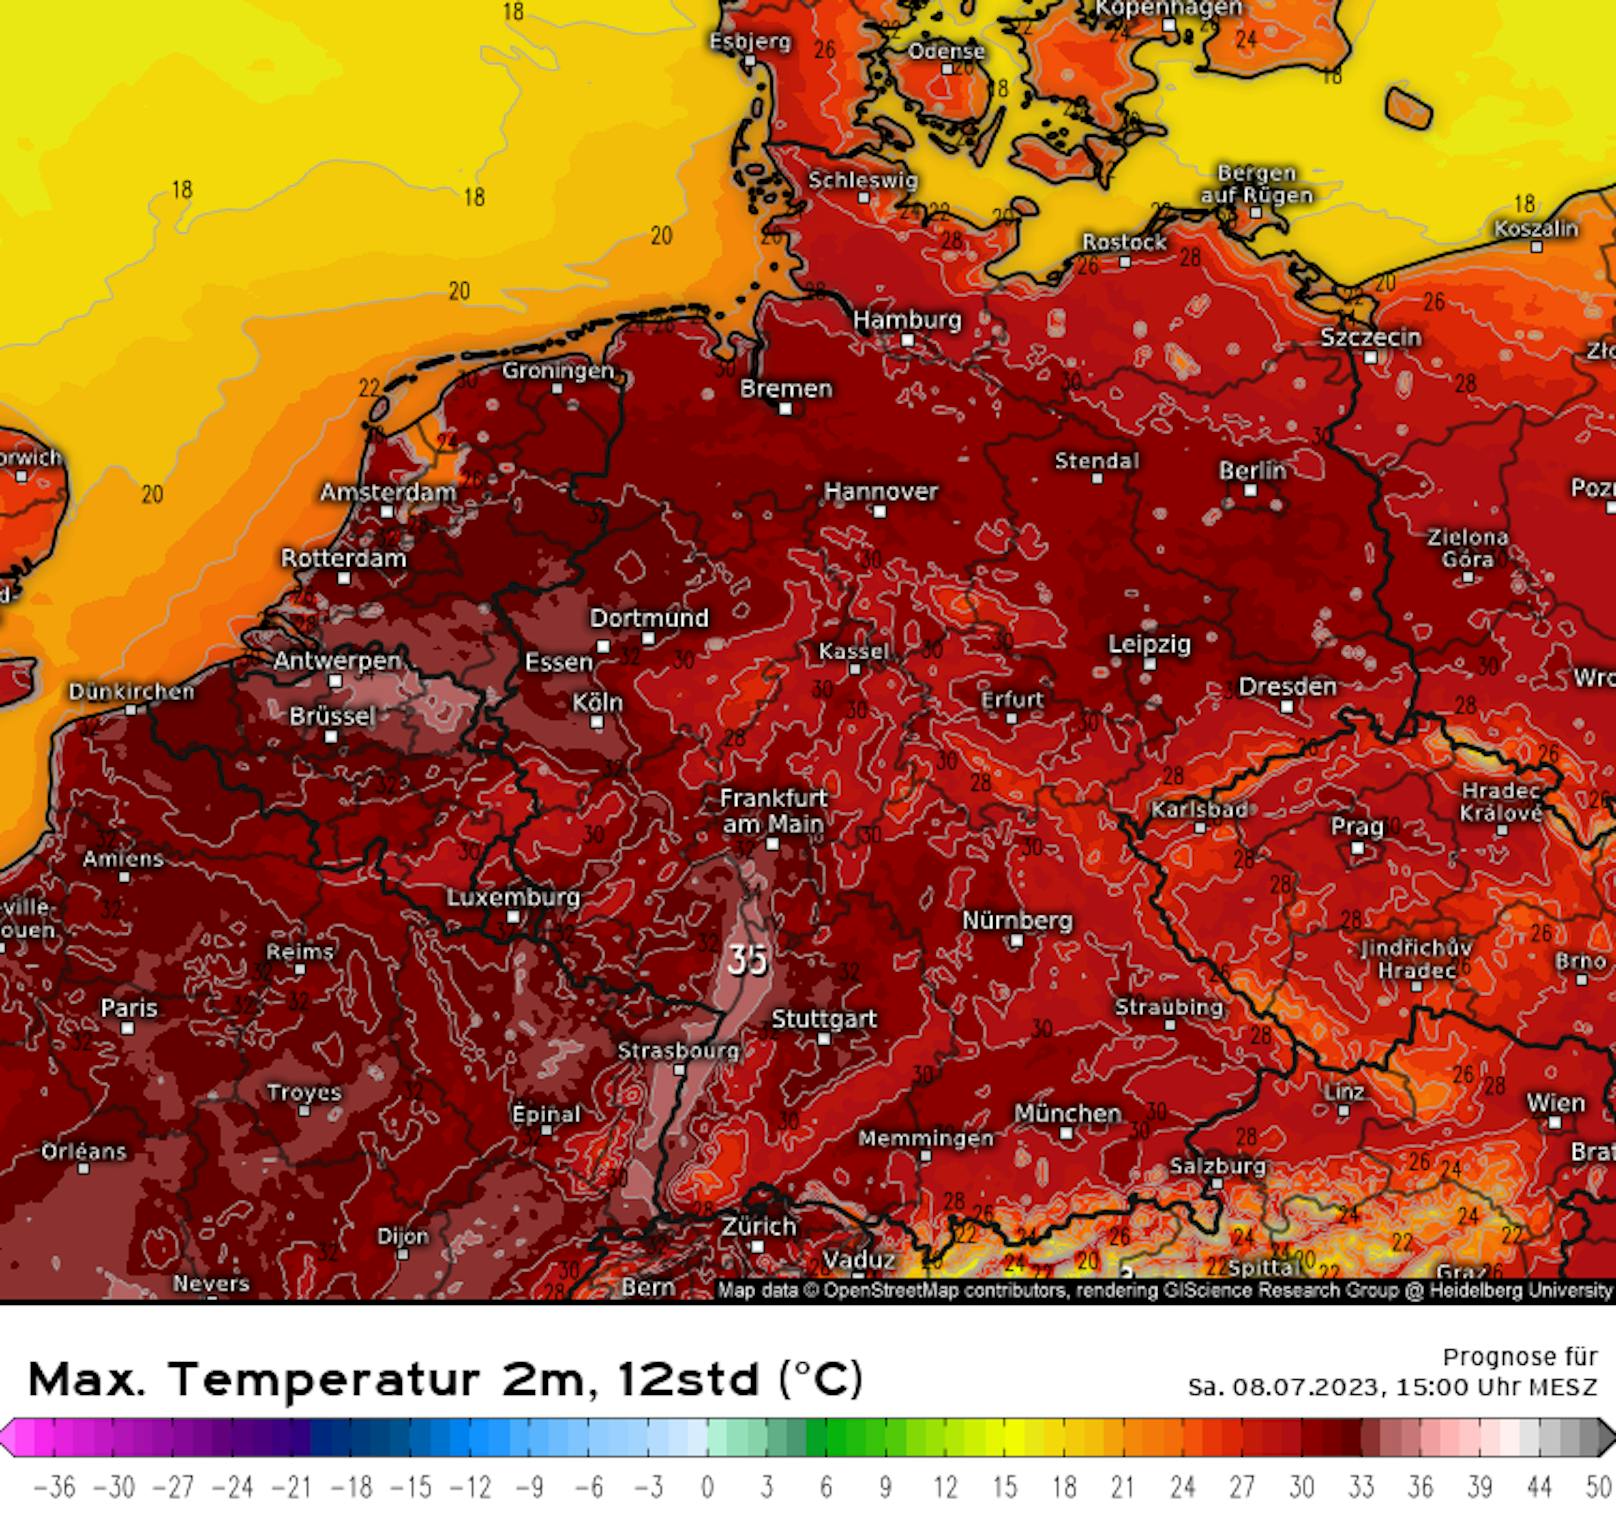 Temperaturprognose für Deutschland, Samstag um 15 Uhr. <a target="_blank" data-li-document-ref="100280200" href="https://www.heute.at/g/wetter-experten-reicht-es-mit-klima-leugnern-100280200">Das viele Rot entzündete die Gemüter &gt;&gt;</a>